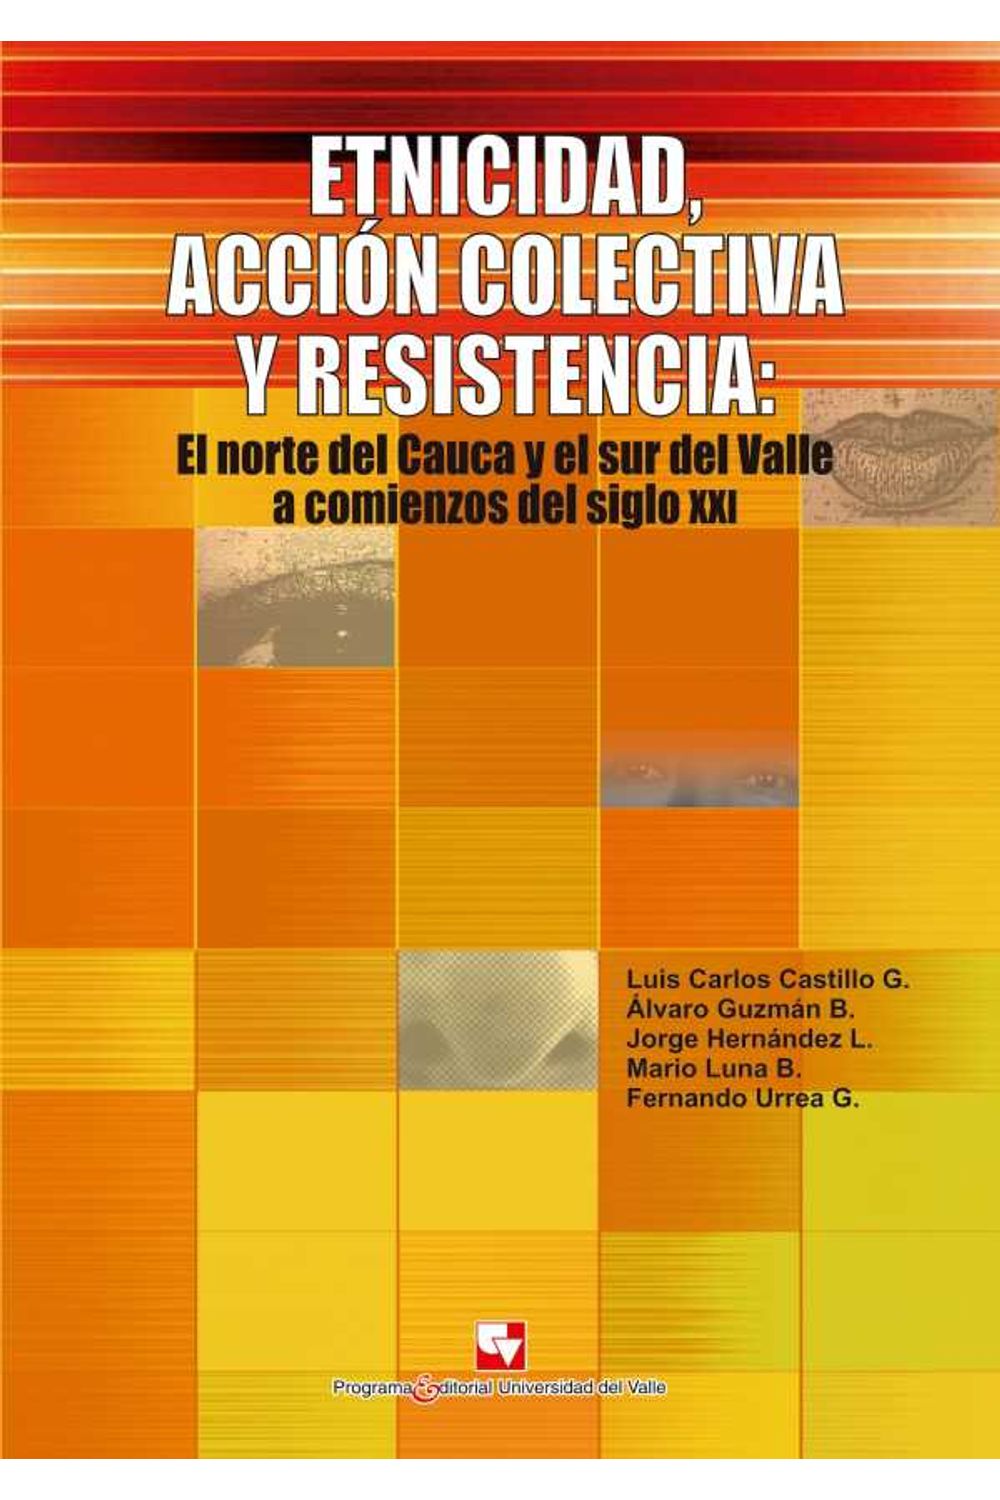 bw-etnicidad-accioacuten-colectiva-y-resistencia-programa-editorial-universidad-del-valle-9789587654240